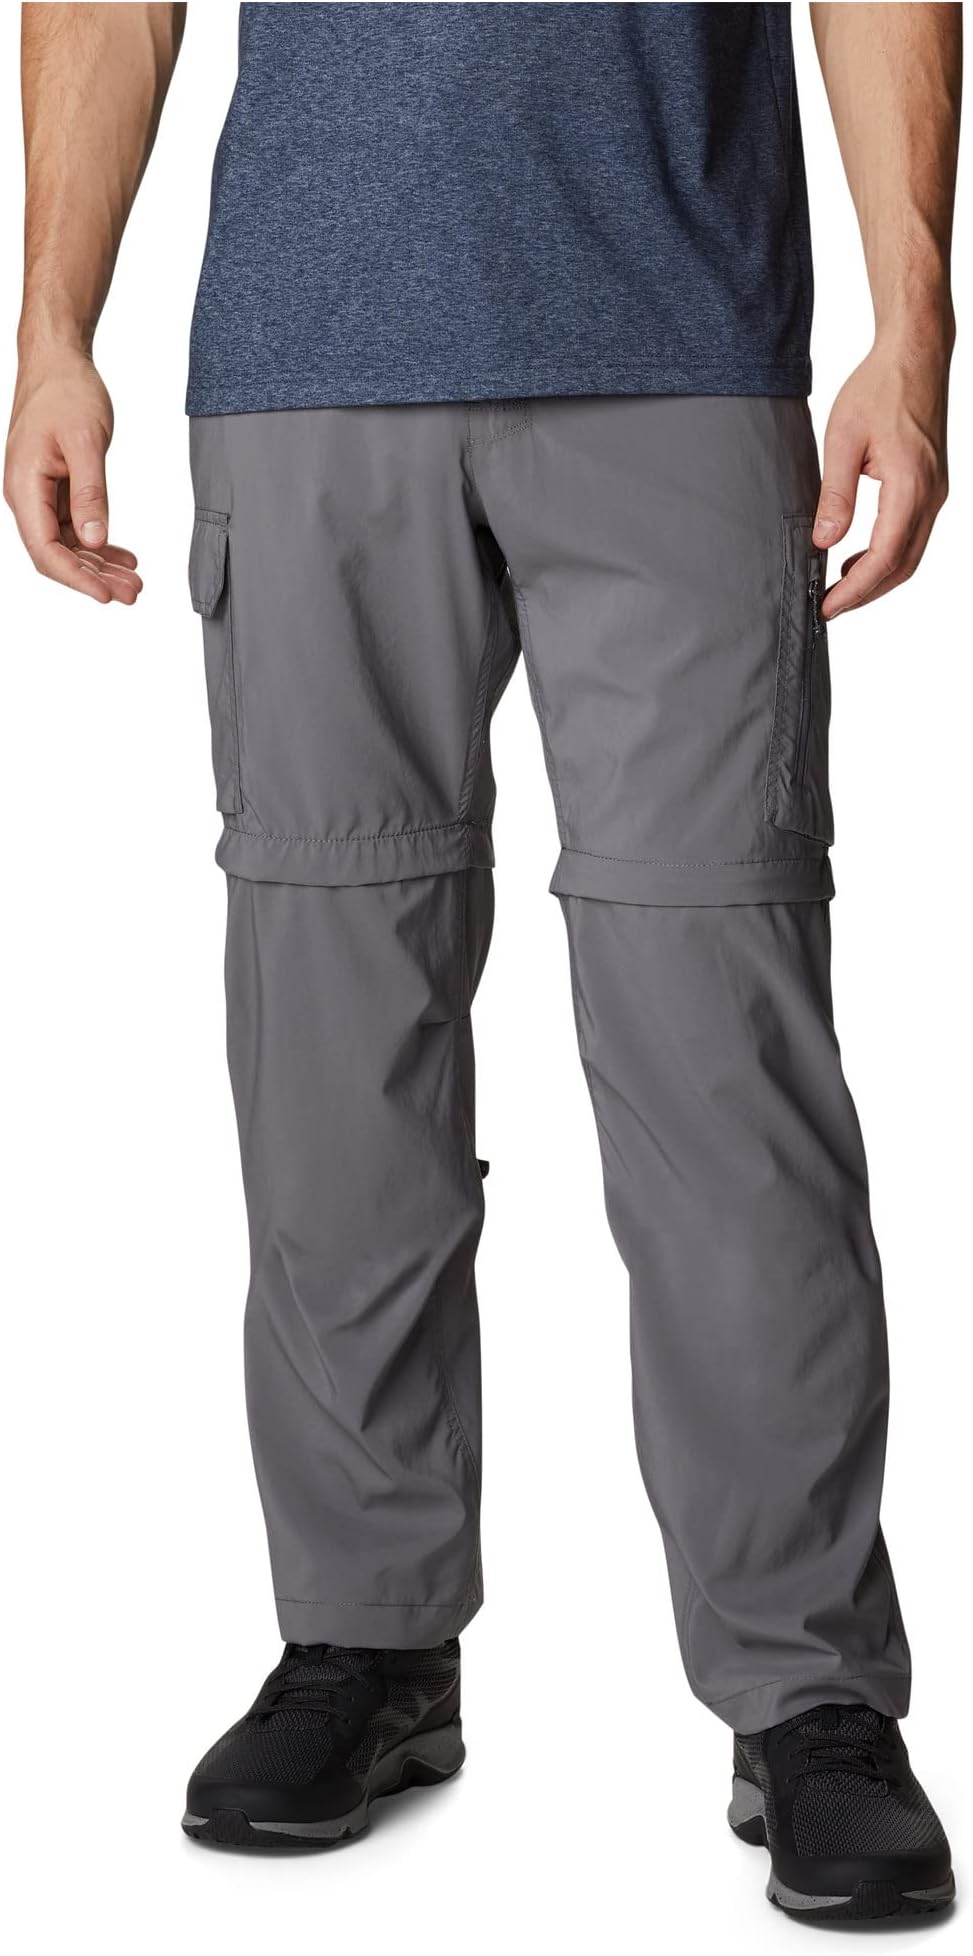 Универсальные брюки-трансформеры Silver Ridge Columbia, цвет City Grey